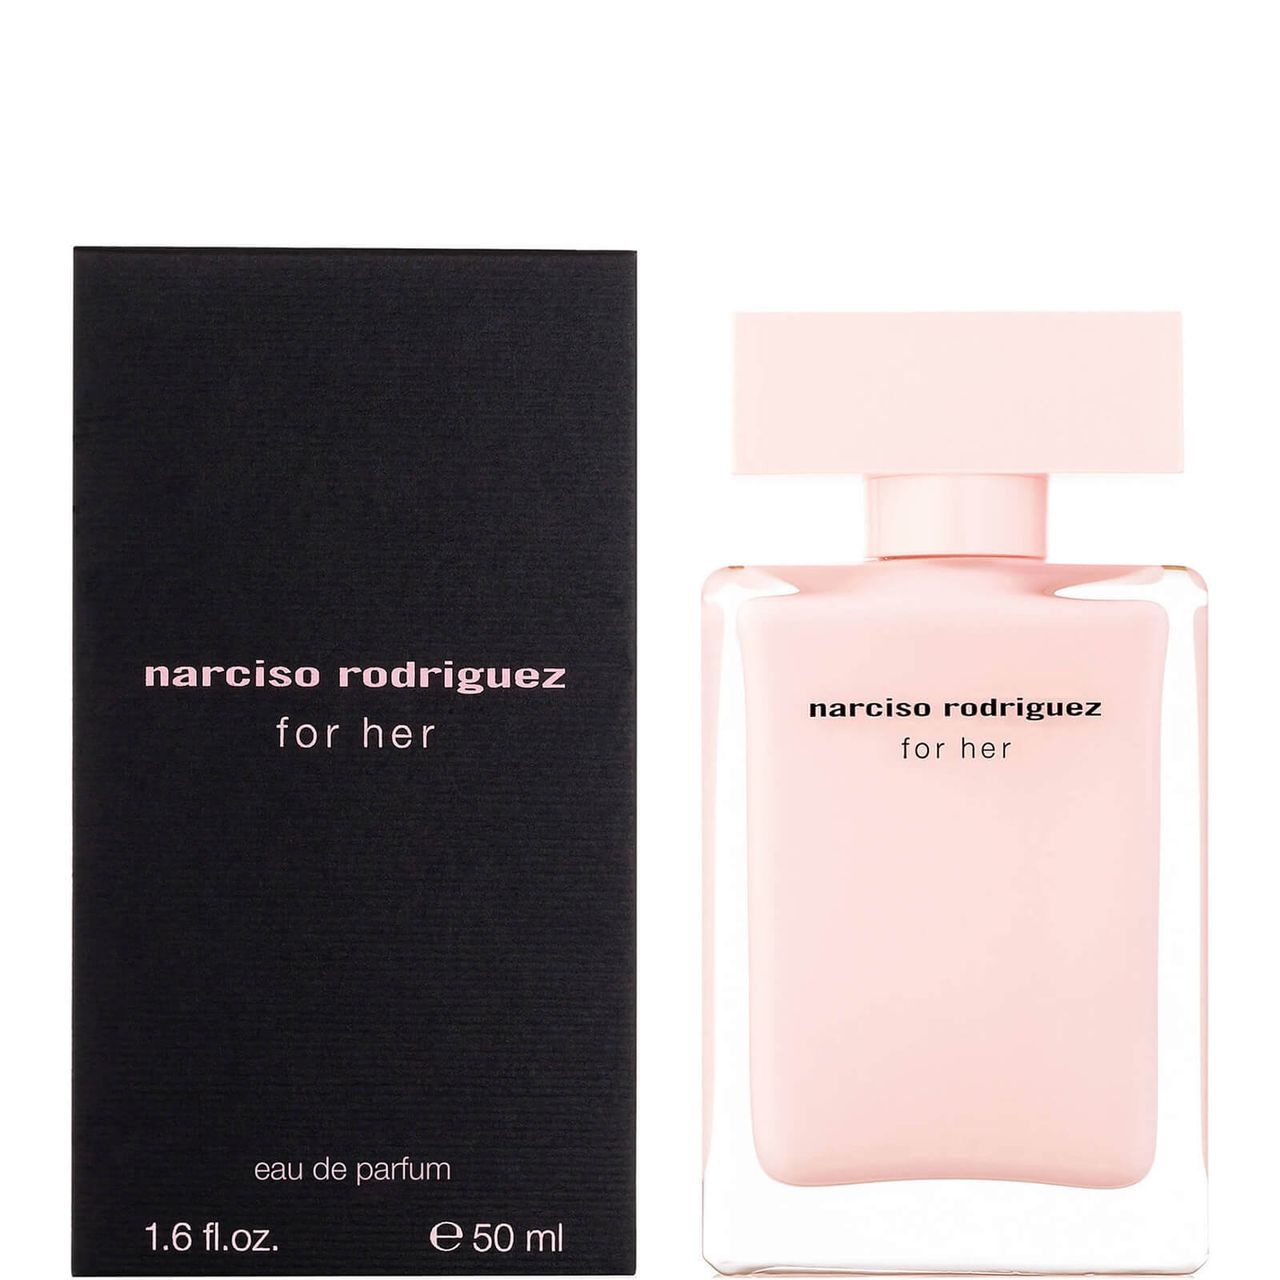 Narciso Rodriguez Eau de Parfum voor vrouwen - 50ml